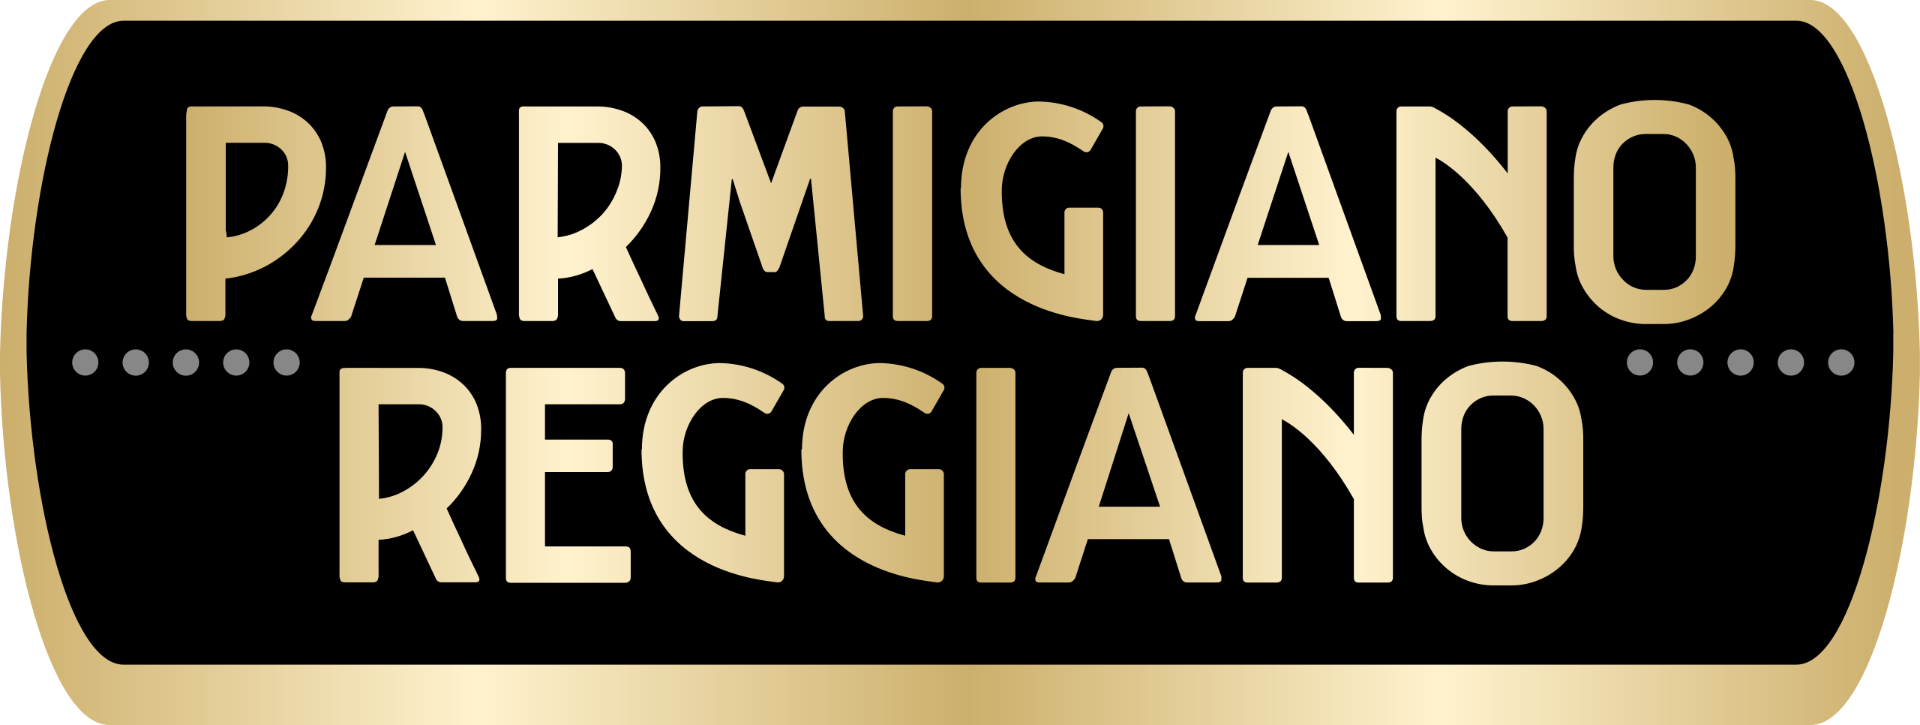 logo-parmigiano-reggiano.png